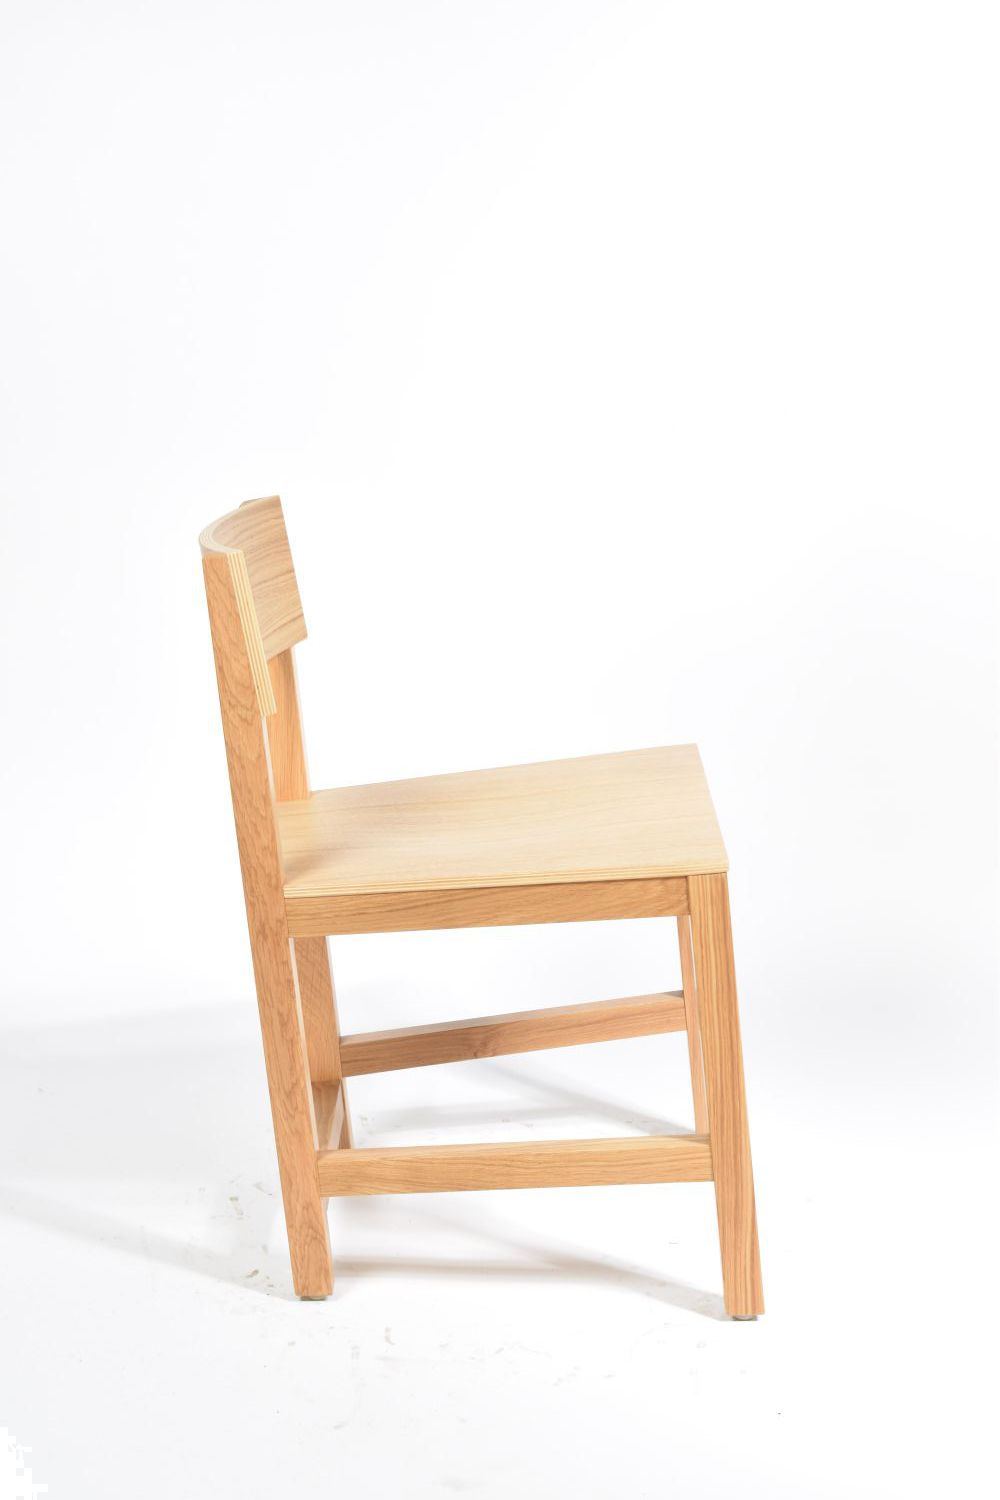 avl shaker chair